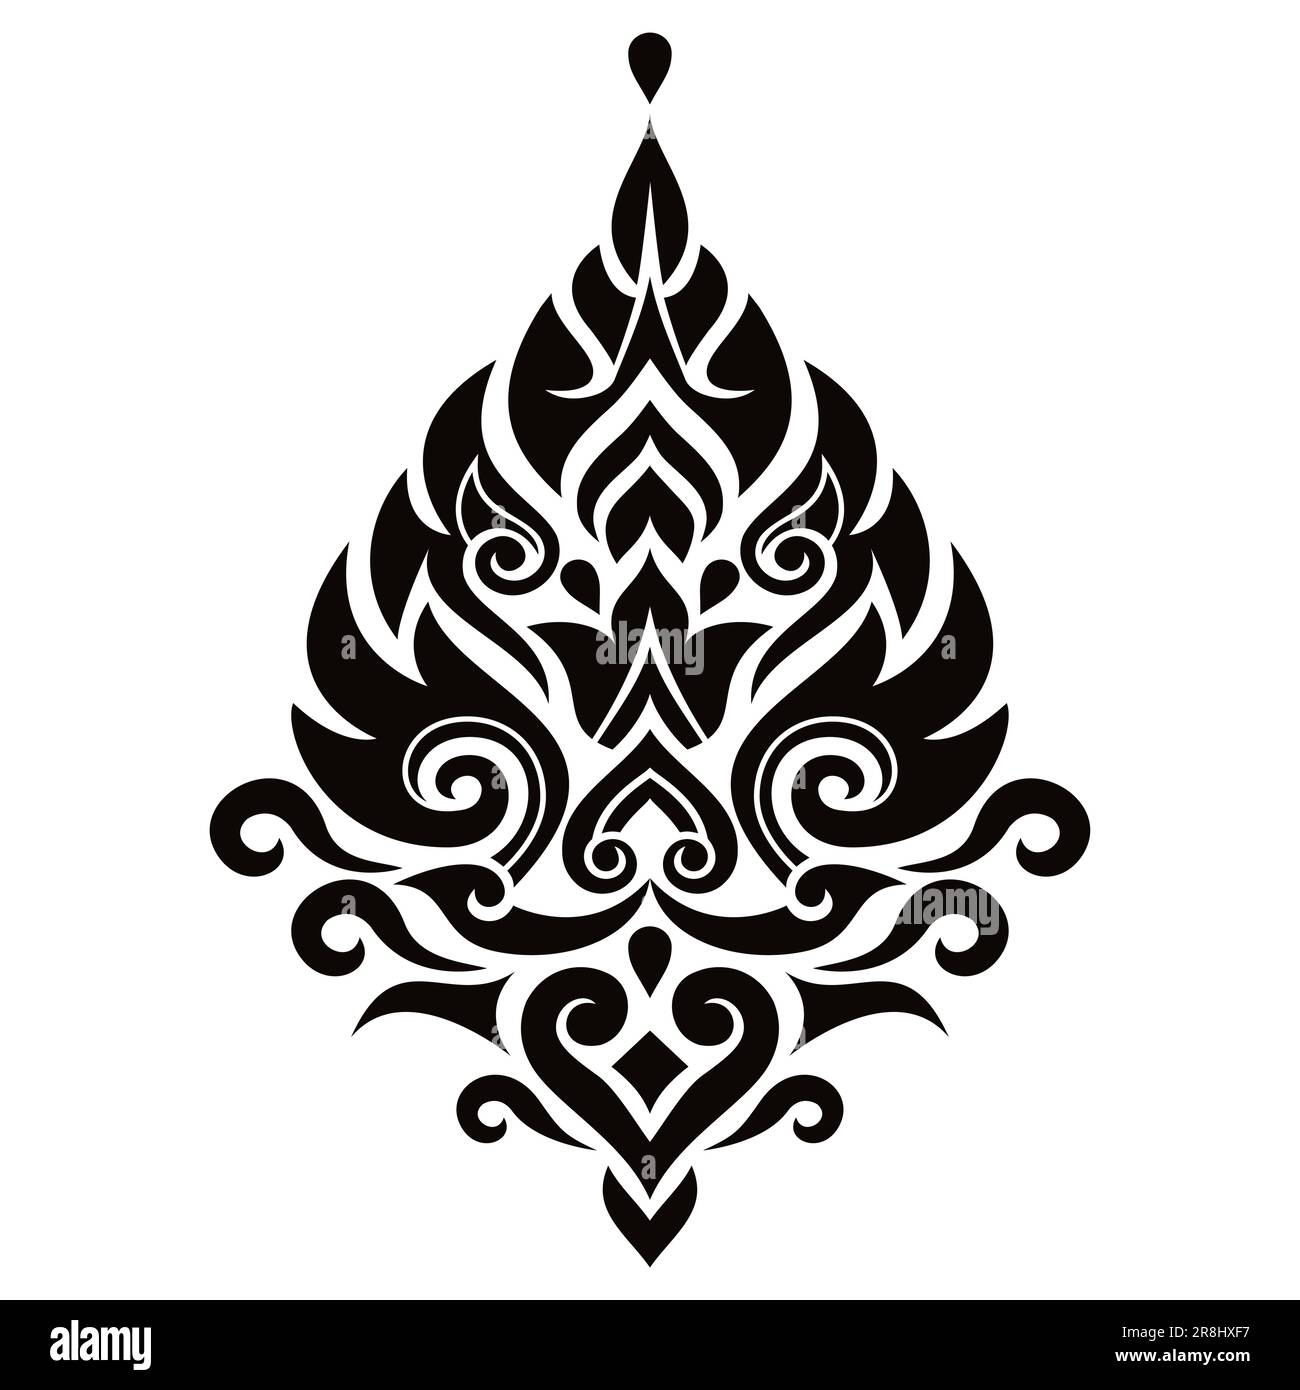 Vecteur thaïlandais élément de design traditionnel, origine ethnique décorative de Thaïlande - style d'art folklorique en noir et blanc Illustration de Vecteur